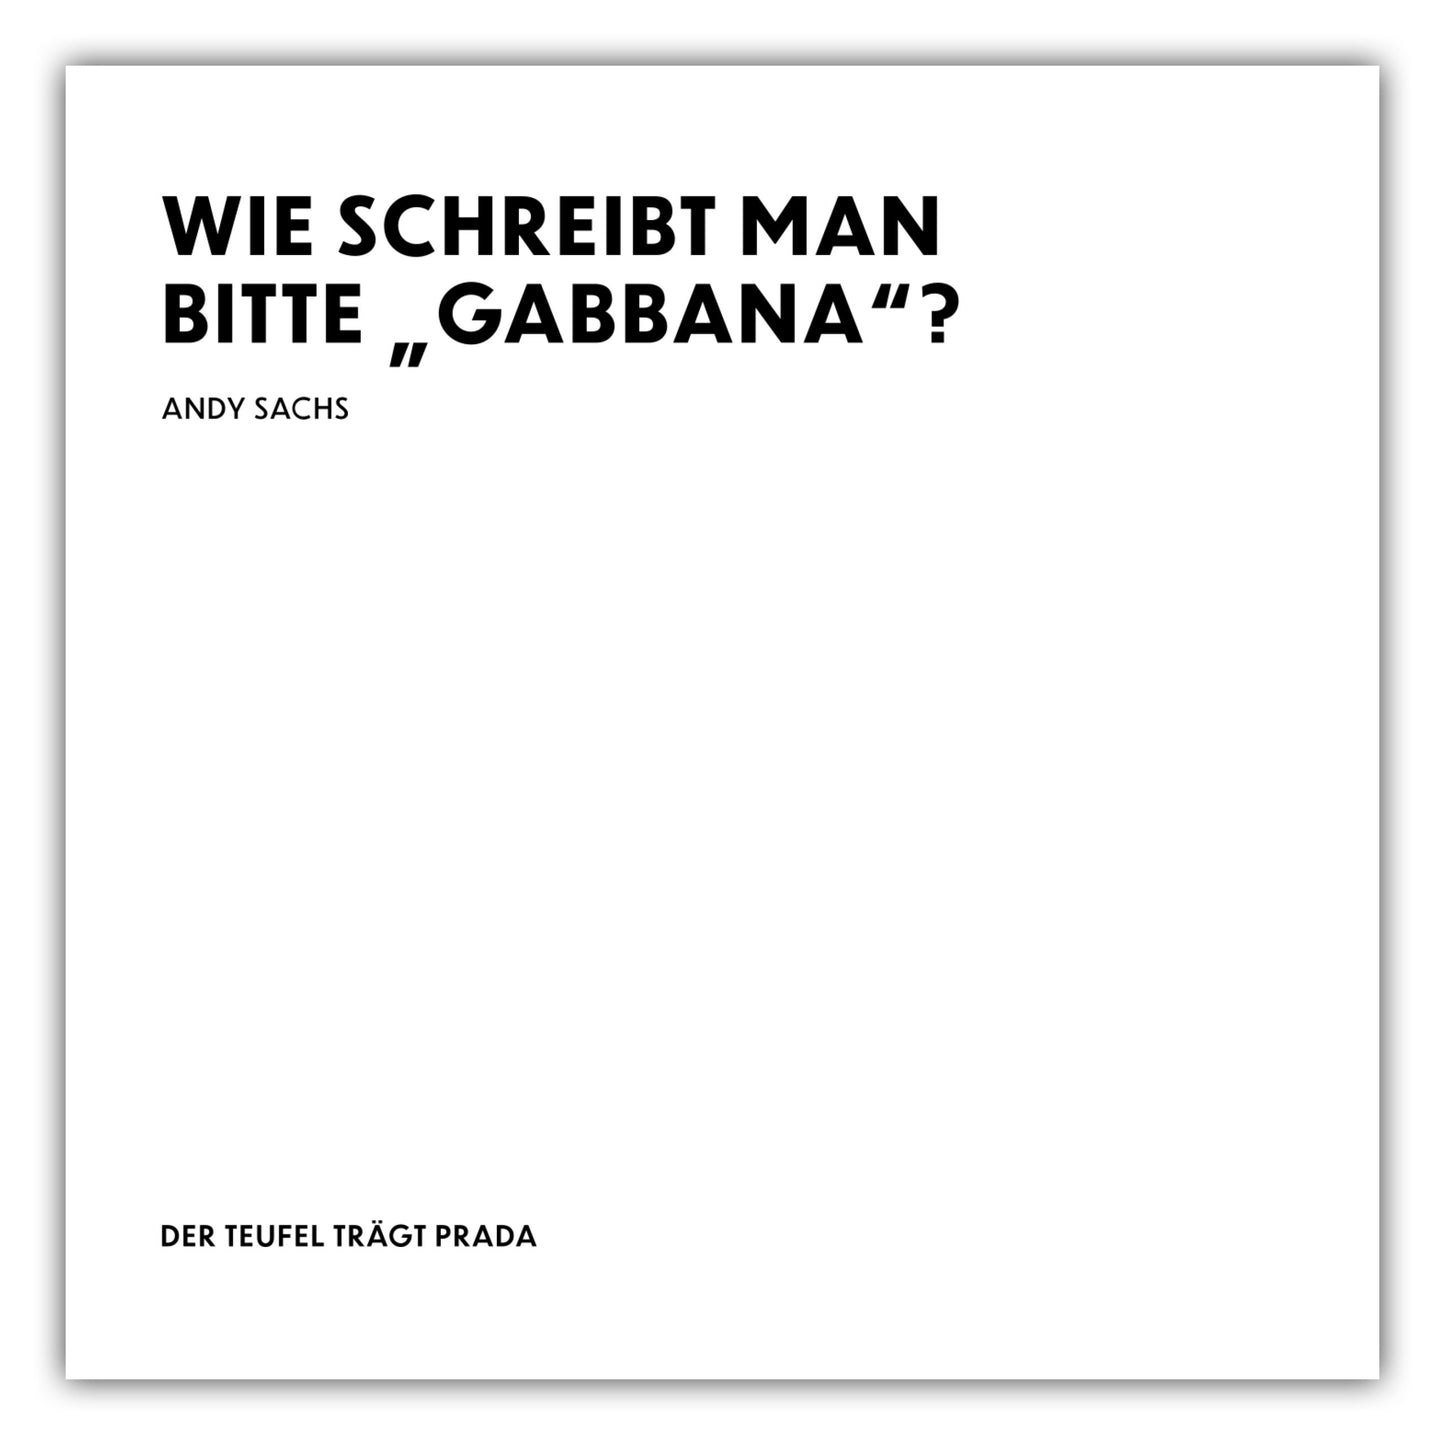 Poster Wie schreibt man bitte "Gabbana"? - Andy Sachs - The Devil Wears Prada (Der Teufel trägt Prada)